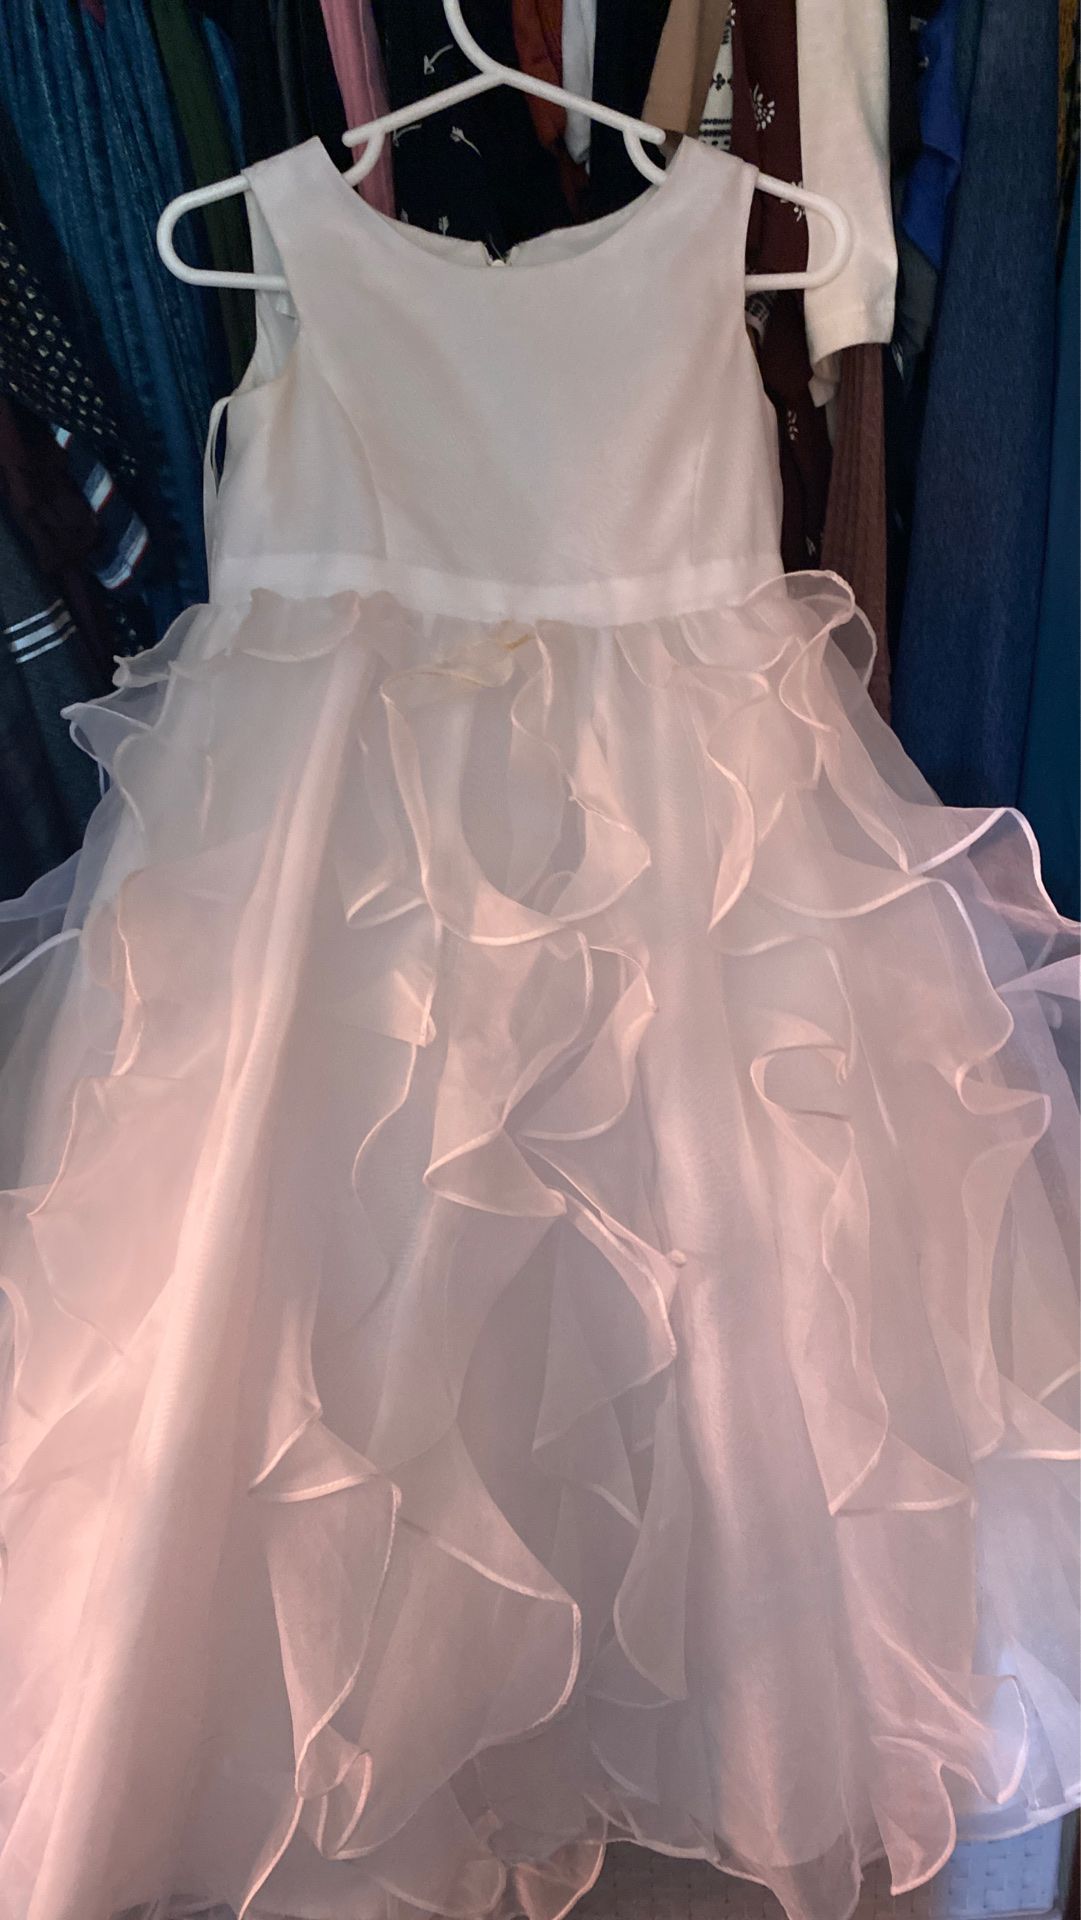 White Dress David’s Bridal 2T, Flower Girl Dress